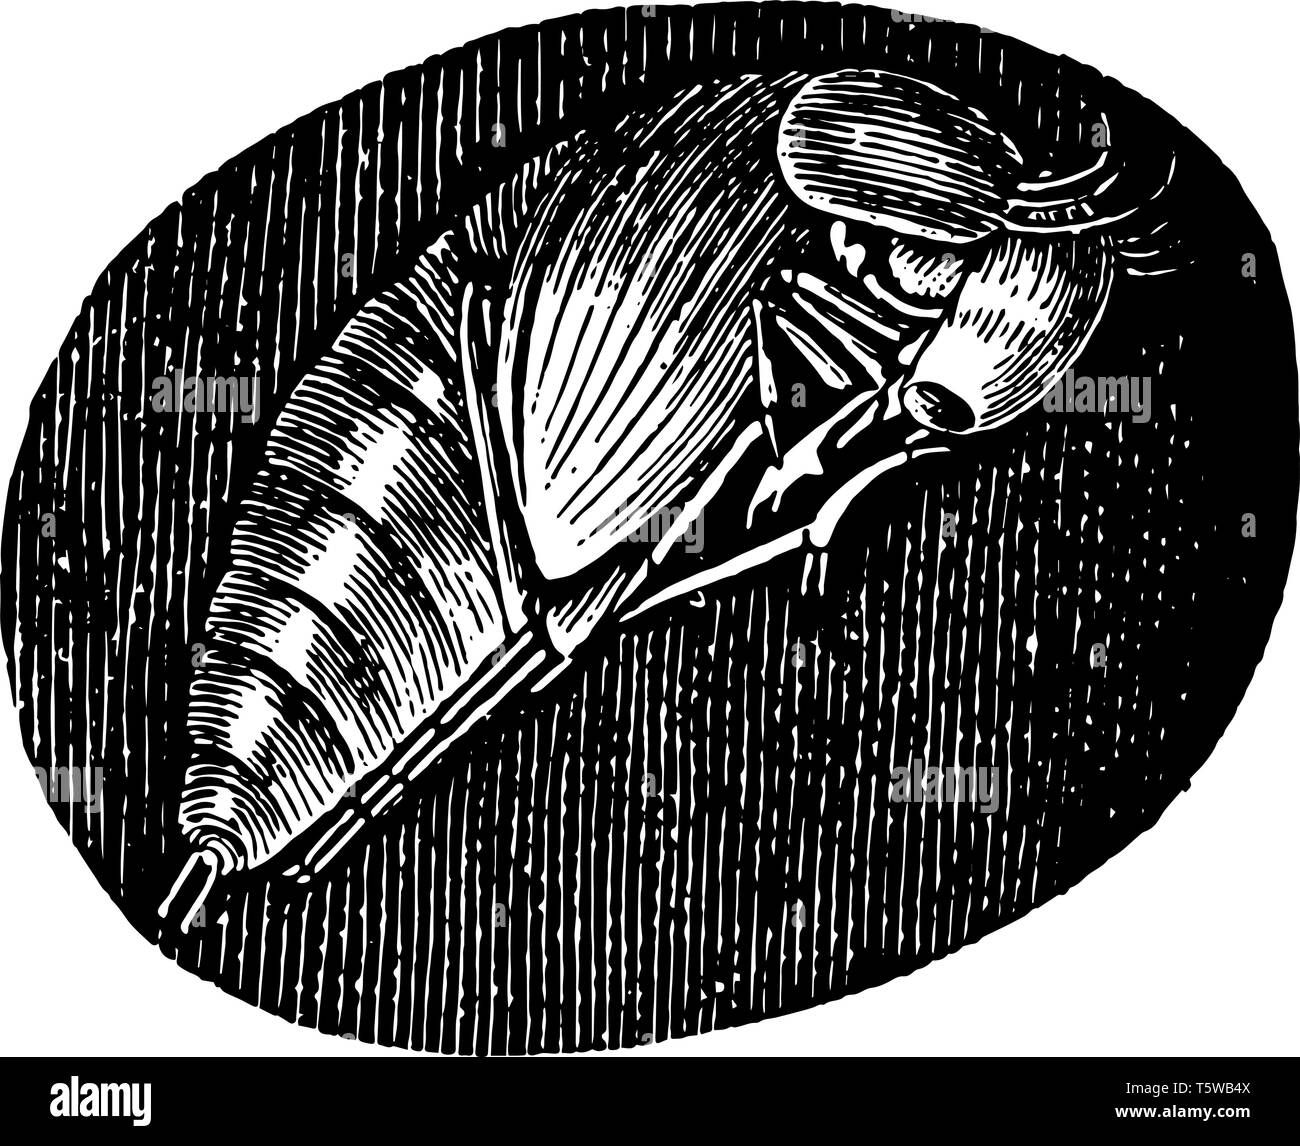 Pupa del Hydrophilus Piceus che burrows nella terra a subire la sua metamorfosi in pupa vintage disegno della linea di incisione o illustrazione. Illustrazione Vettoriale